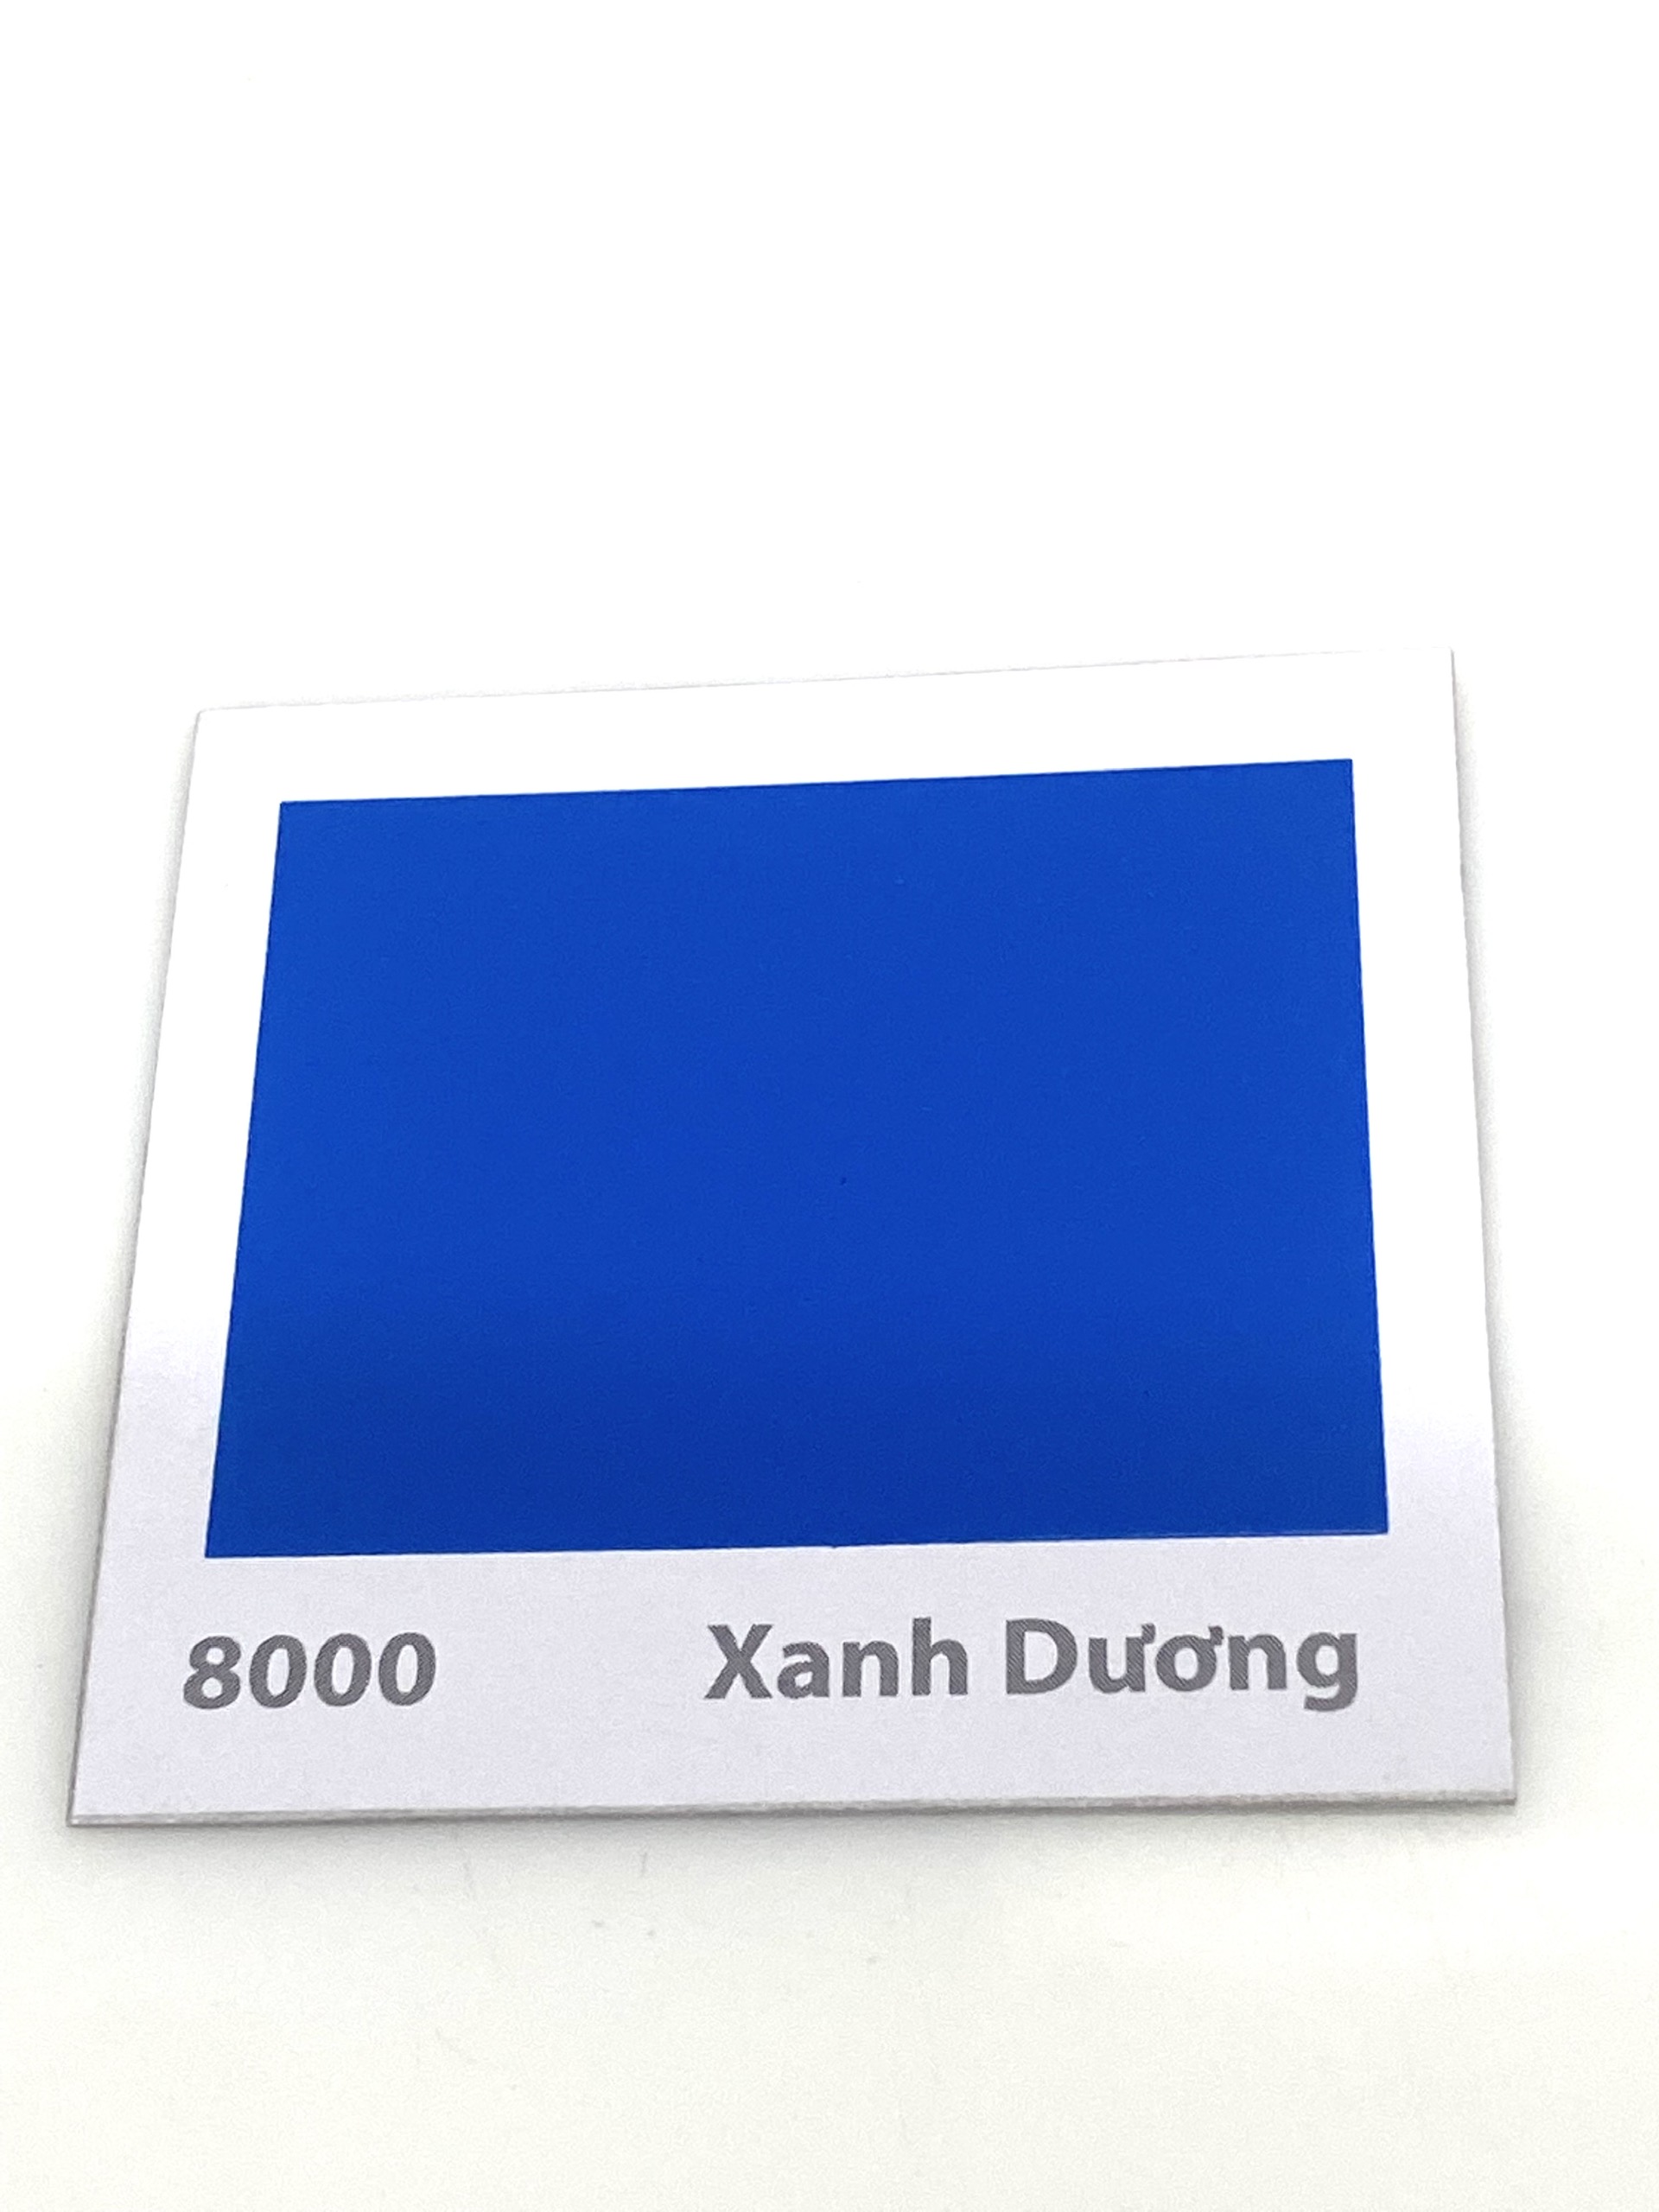 Sơn sàn bê tông Donasa /Floor coating Paint màu xanh dương DEF8000 15L